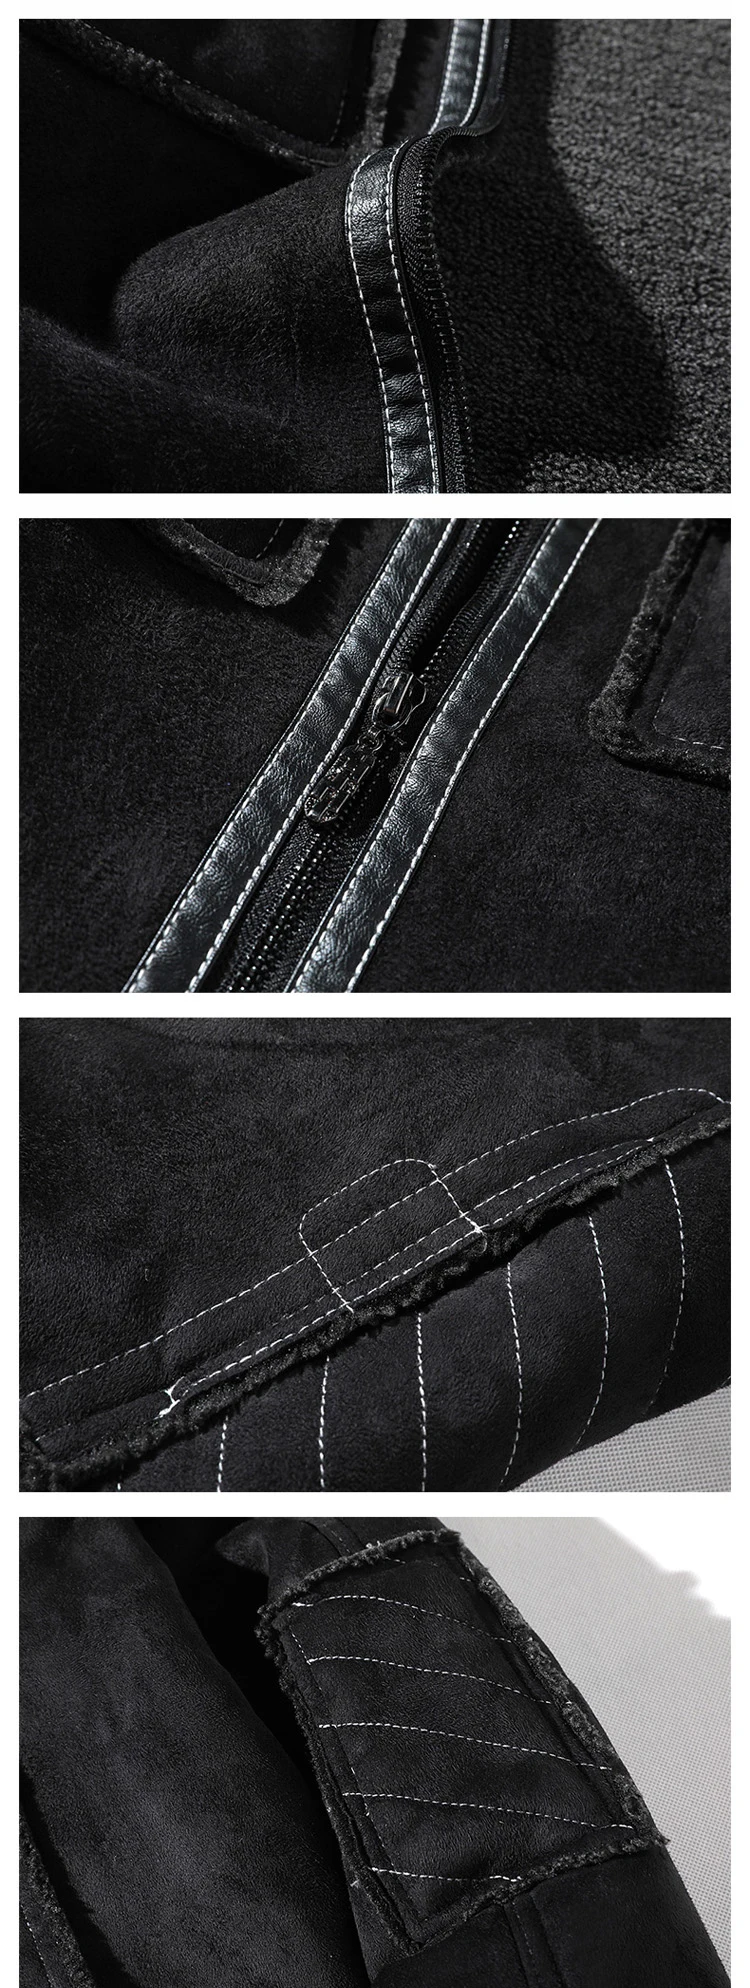 SOUL OF TIGER Европейская мода Роскошная панк Байкерская теплая одежда мужские негабаритные кожаные куртки винтажные зимние меховые замшевые пальто